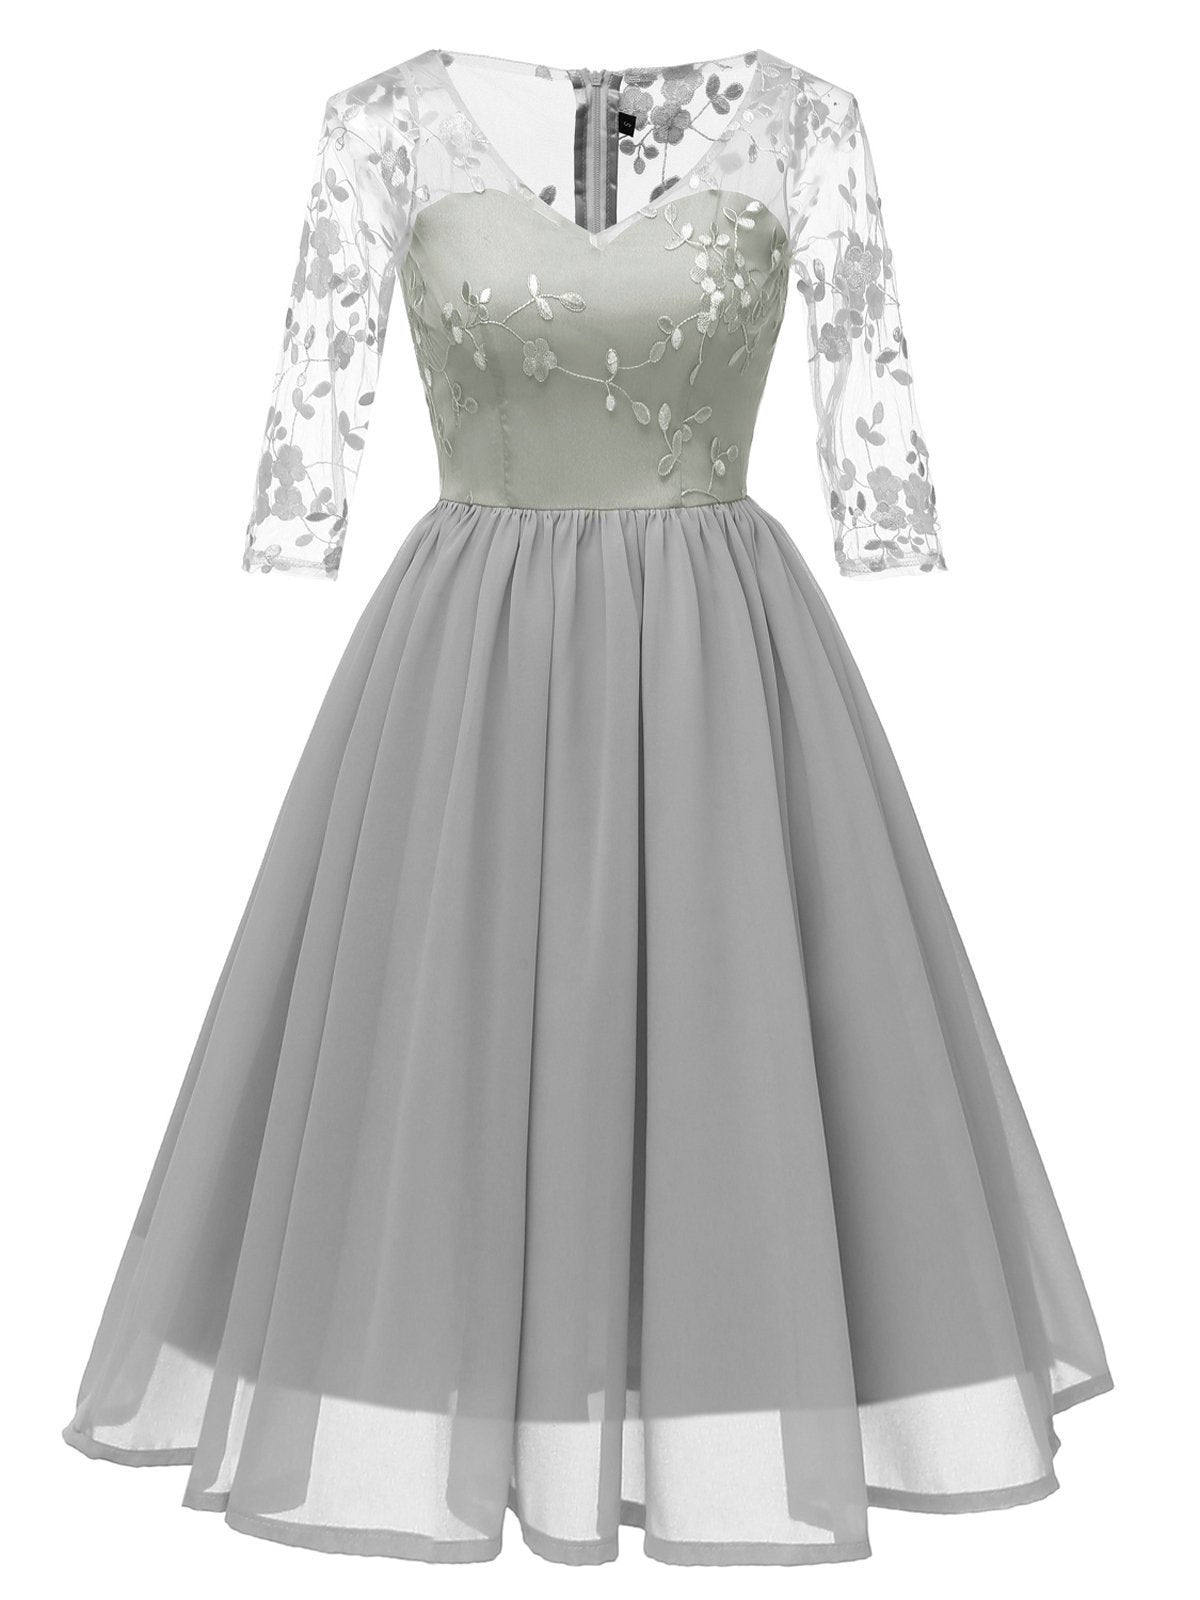 1950s Lace Embroidery Chiffon Dress